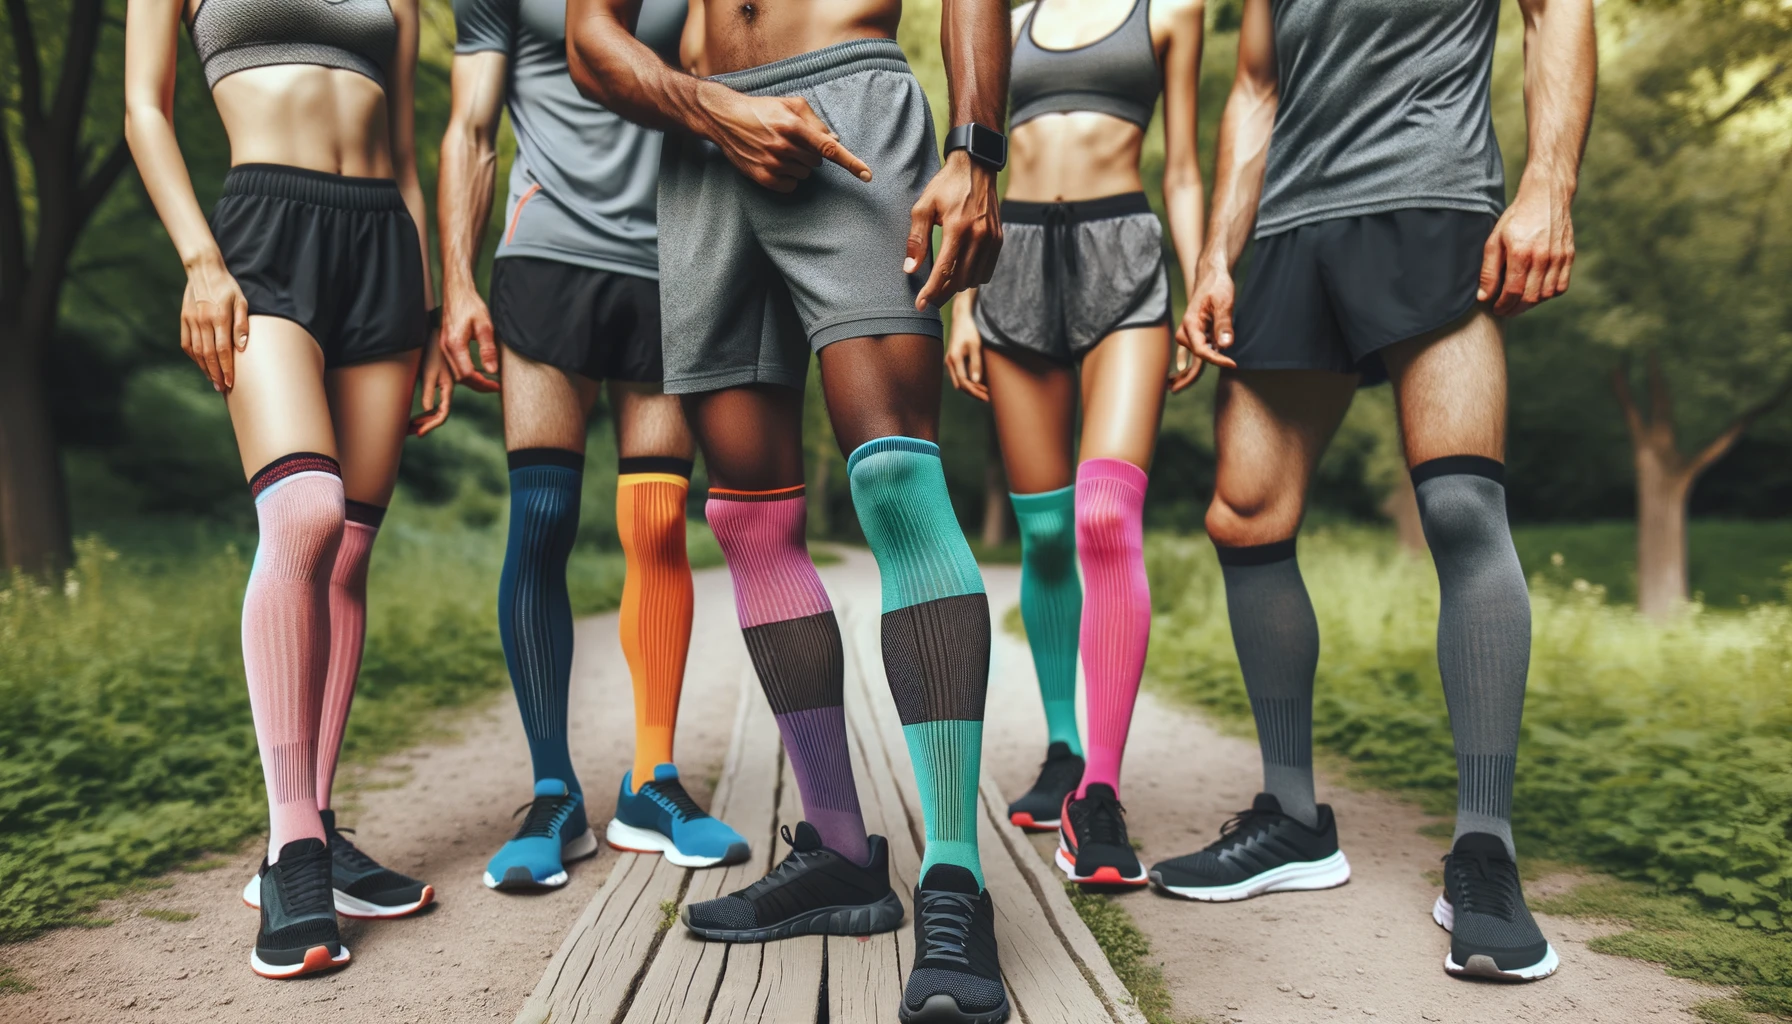 Foto einer Gruppe von Läufern, die zusammen stehen und ihre verschiedenfarbigen Kompressionssocken präsentieren.